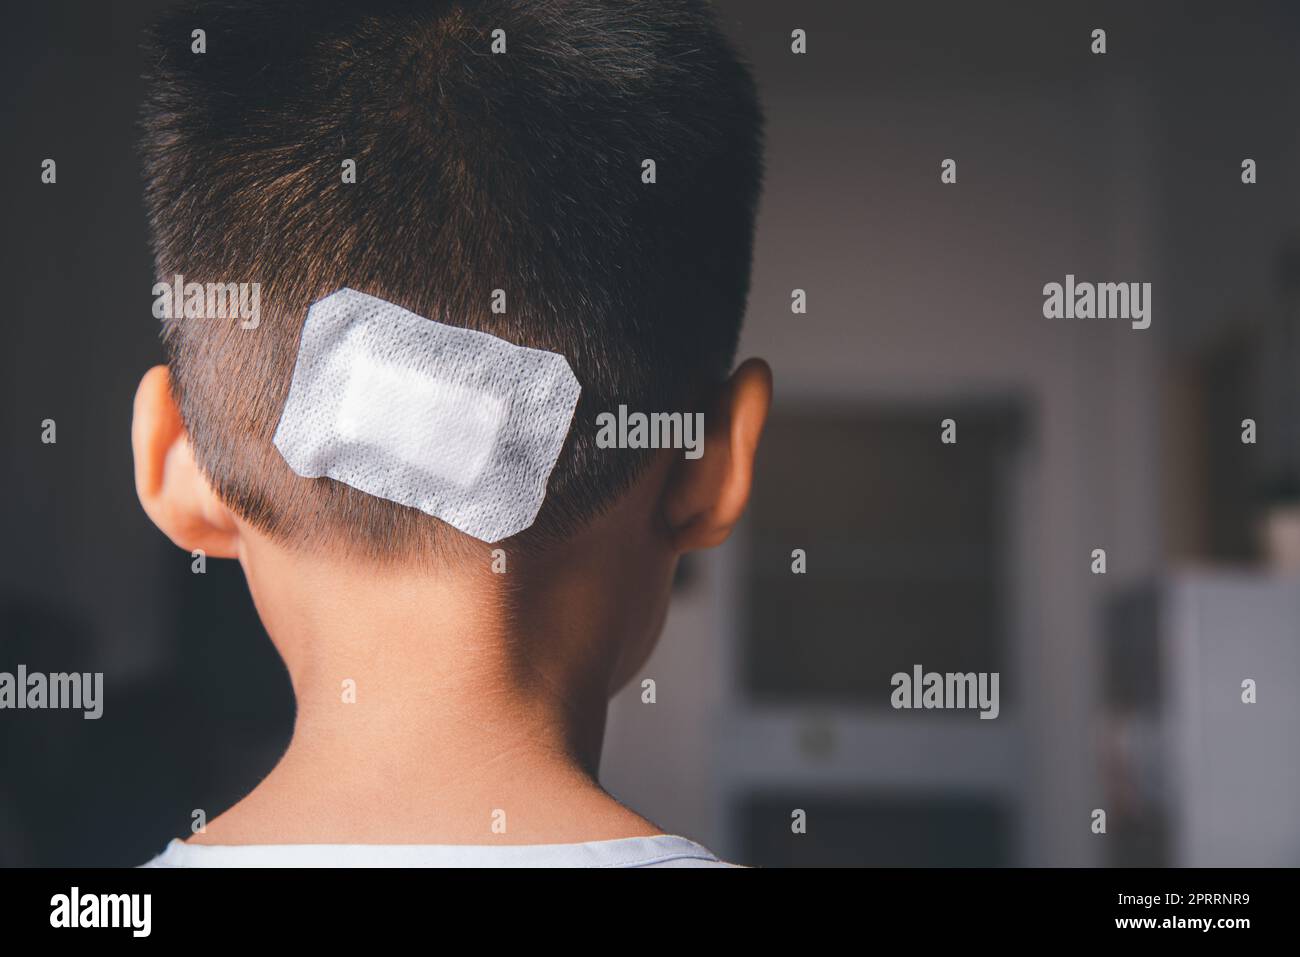 La suture lacérée de la tête du dos de l'enfant qui suture avec traumatisme la tête par bandage médical Banque D'Images